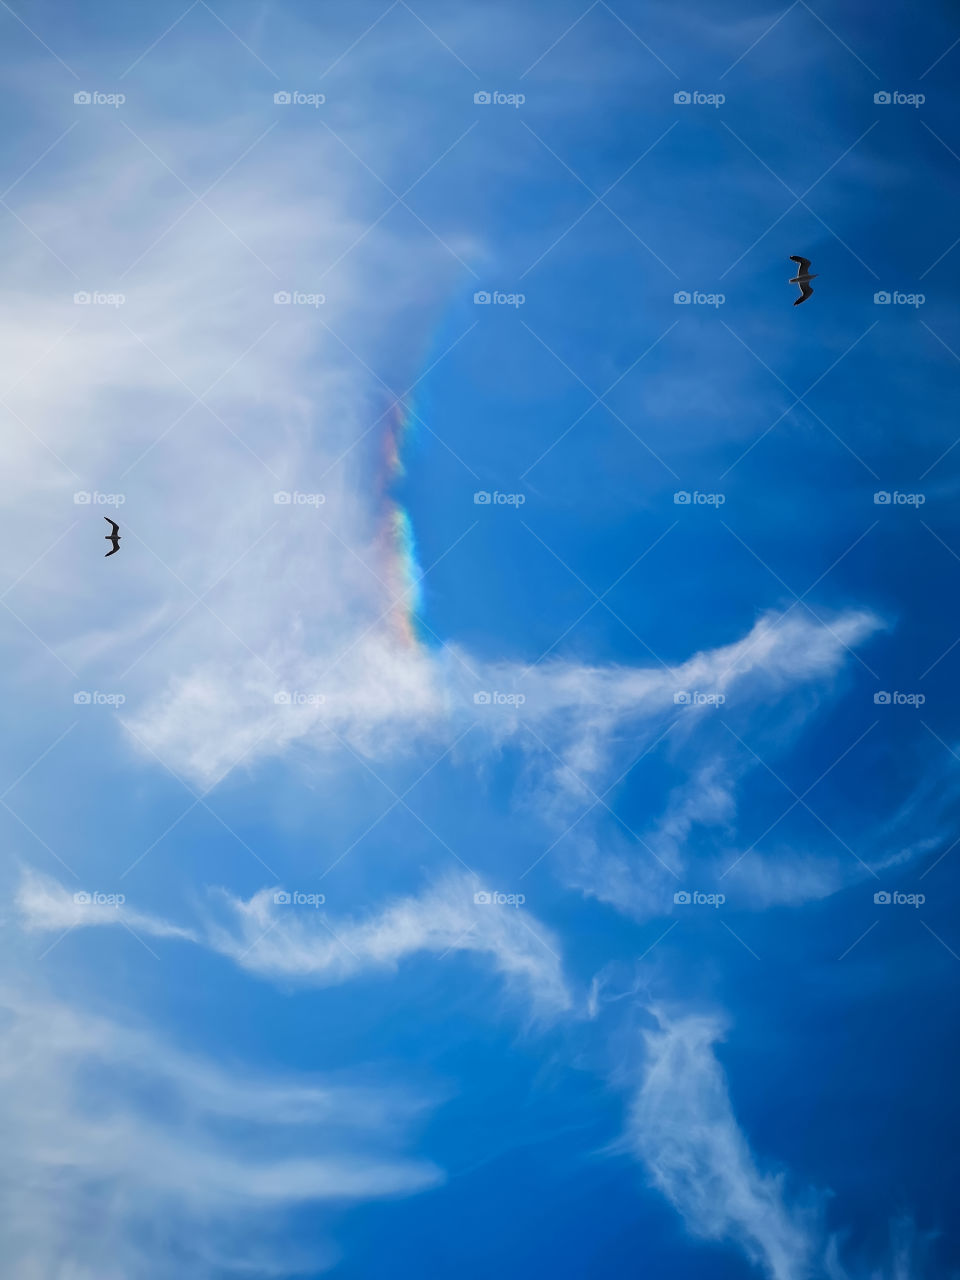 Seagulls, the sky sailors and little rainbow.